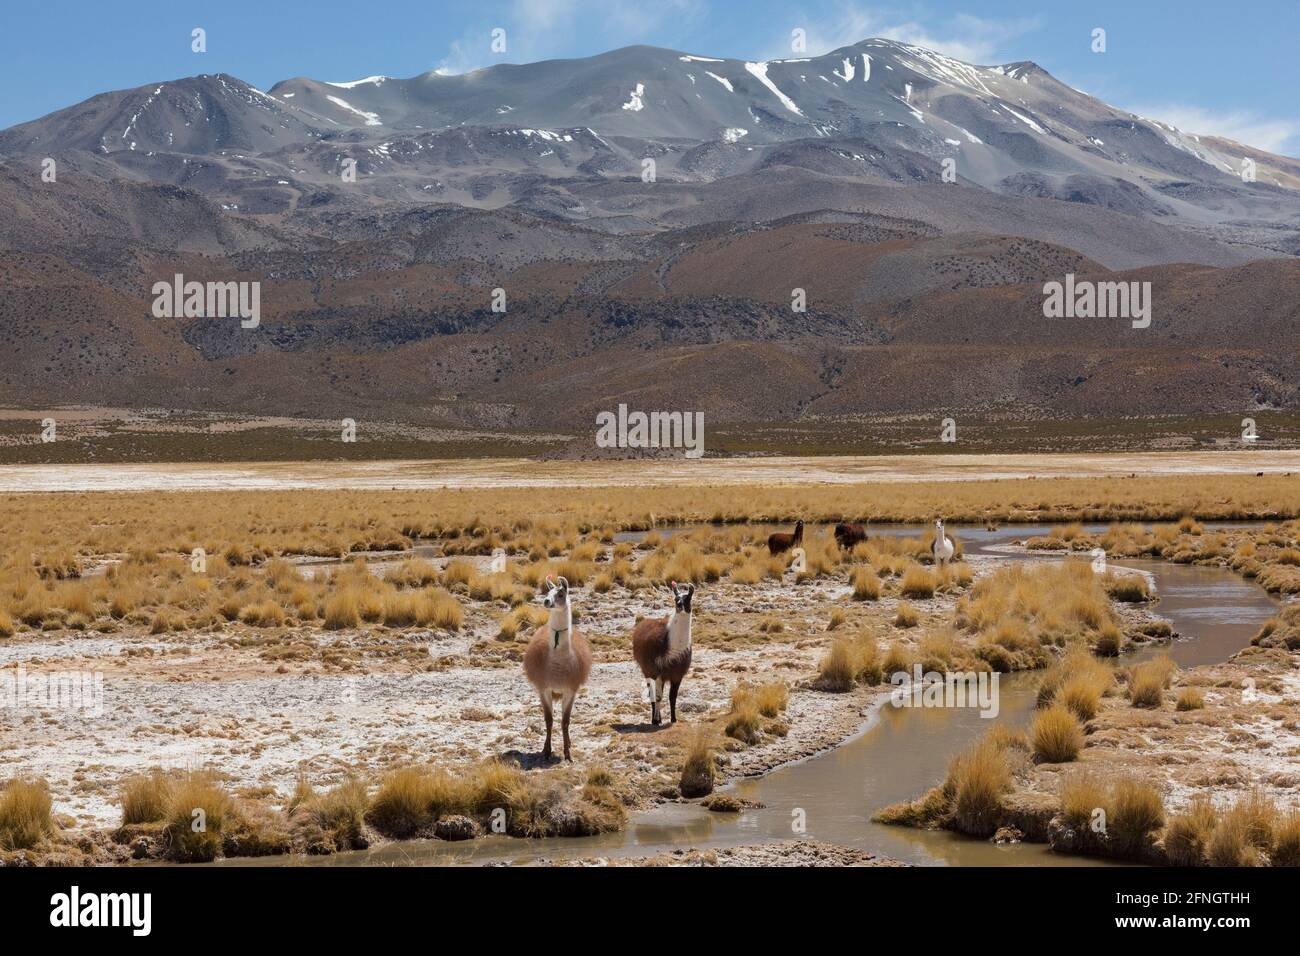 Lama che vagano per il paesaggio desertico della Bolivia. Frequenti in tutte le regioni desertiche sudamericane, ampiamente utilizzato come carne e impacco animale Foto Stock